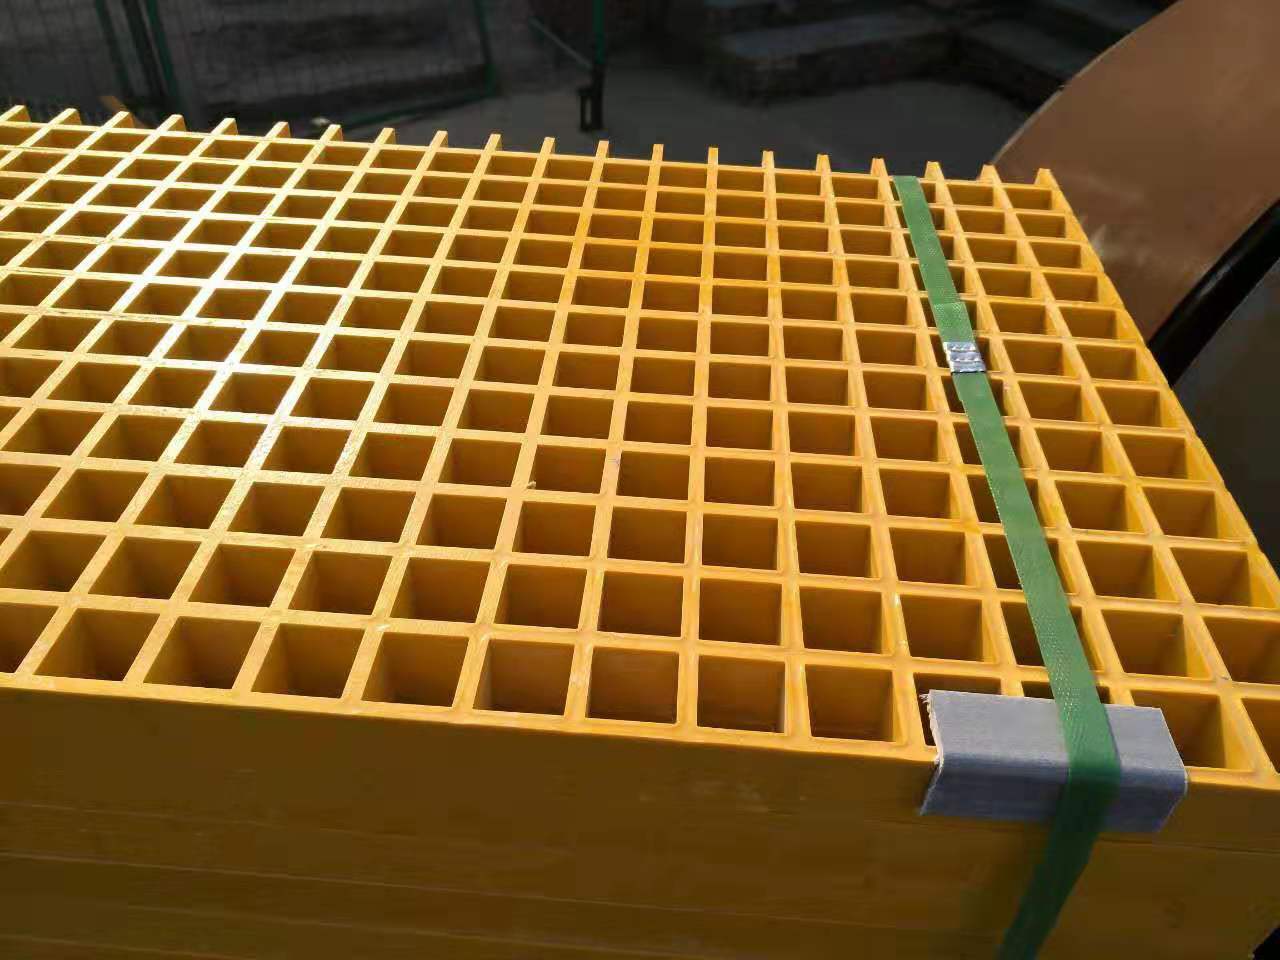 玻璃钢格栅盖板网格板 直销 洗车专用平台 复合材料格栅盖板 澳朗钢格板厂家2